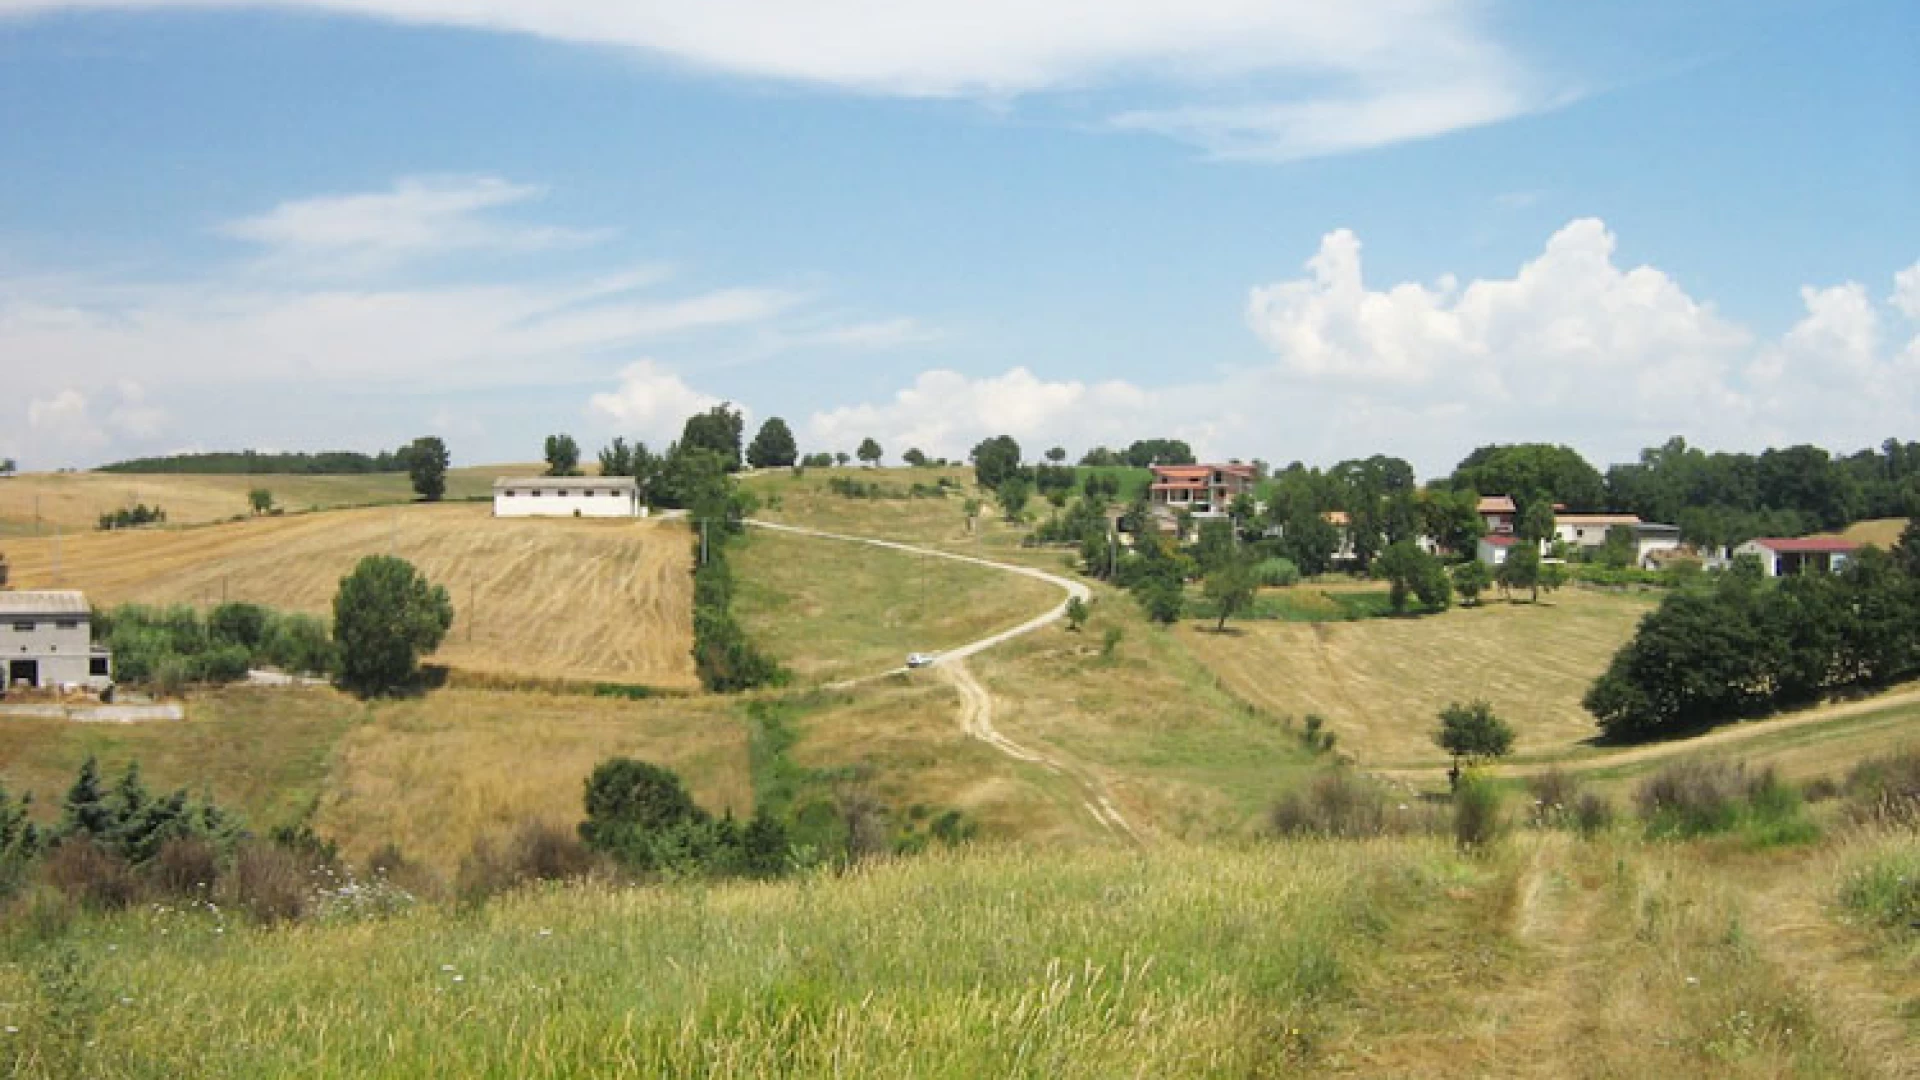 Partono anche nell'area Mainardica gli eventi estivi promossi dal Pnalm (Parco Nazionale d'Abruzzo, Lazio e Molise)